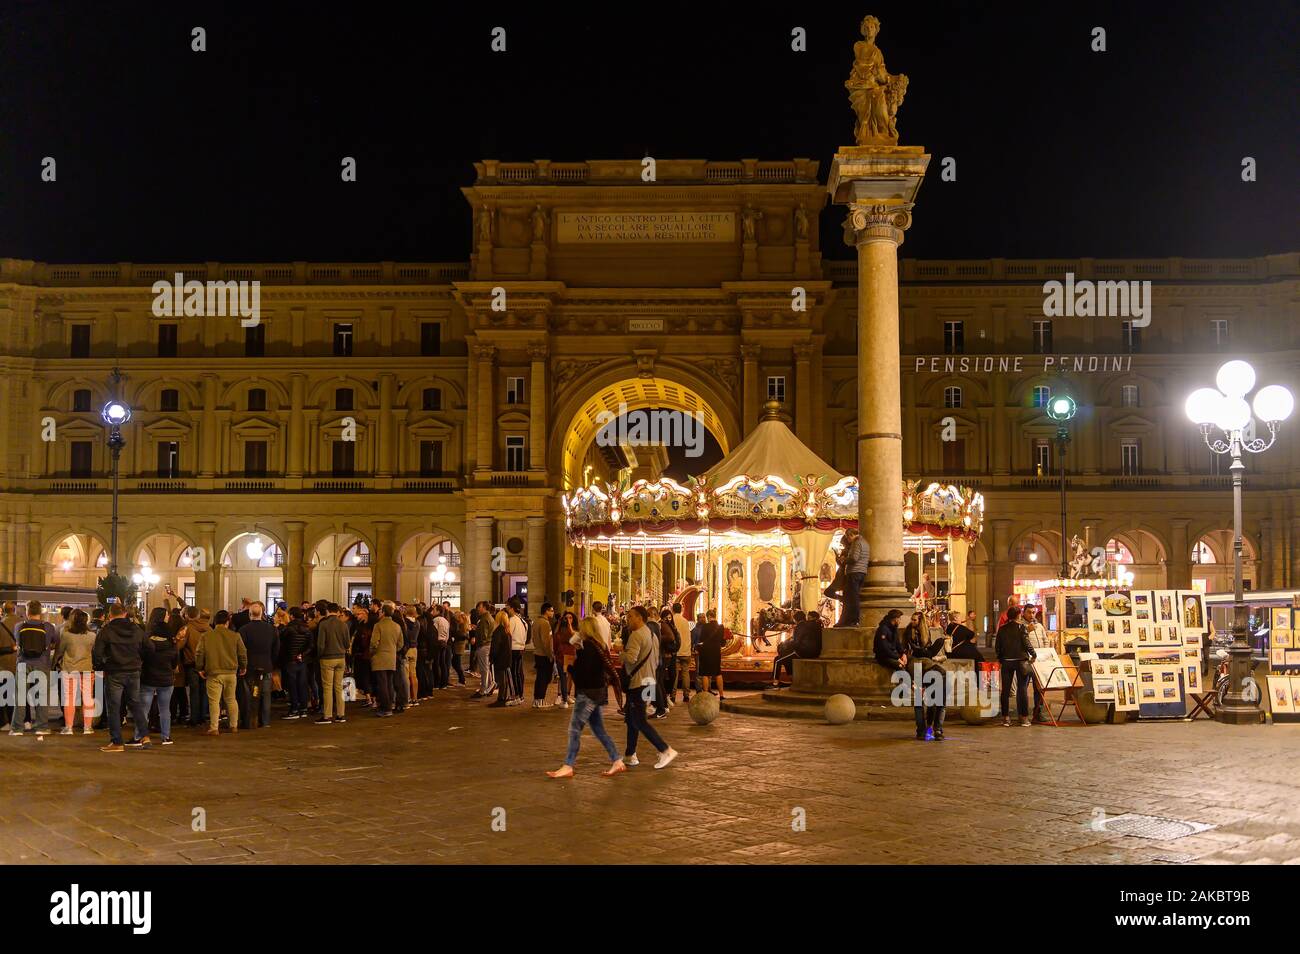 Piazza della Repubblica, Florence Italy Stock Photo